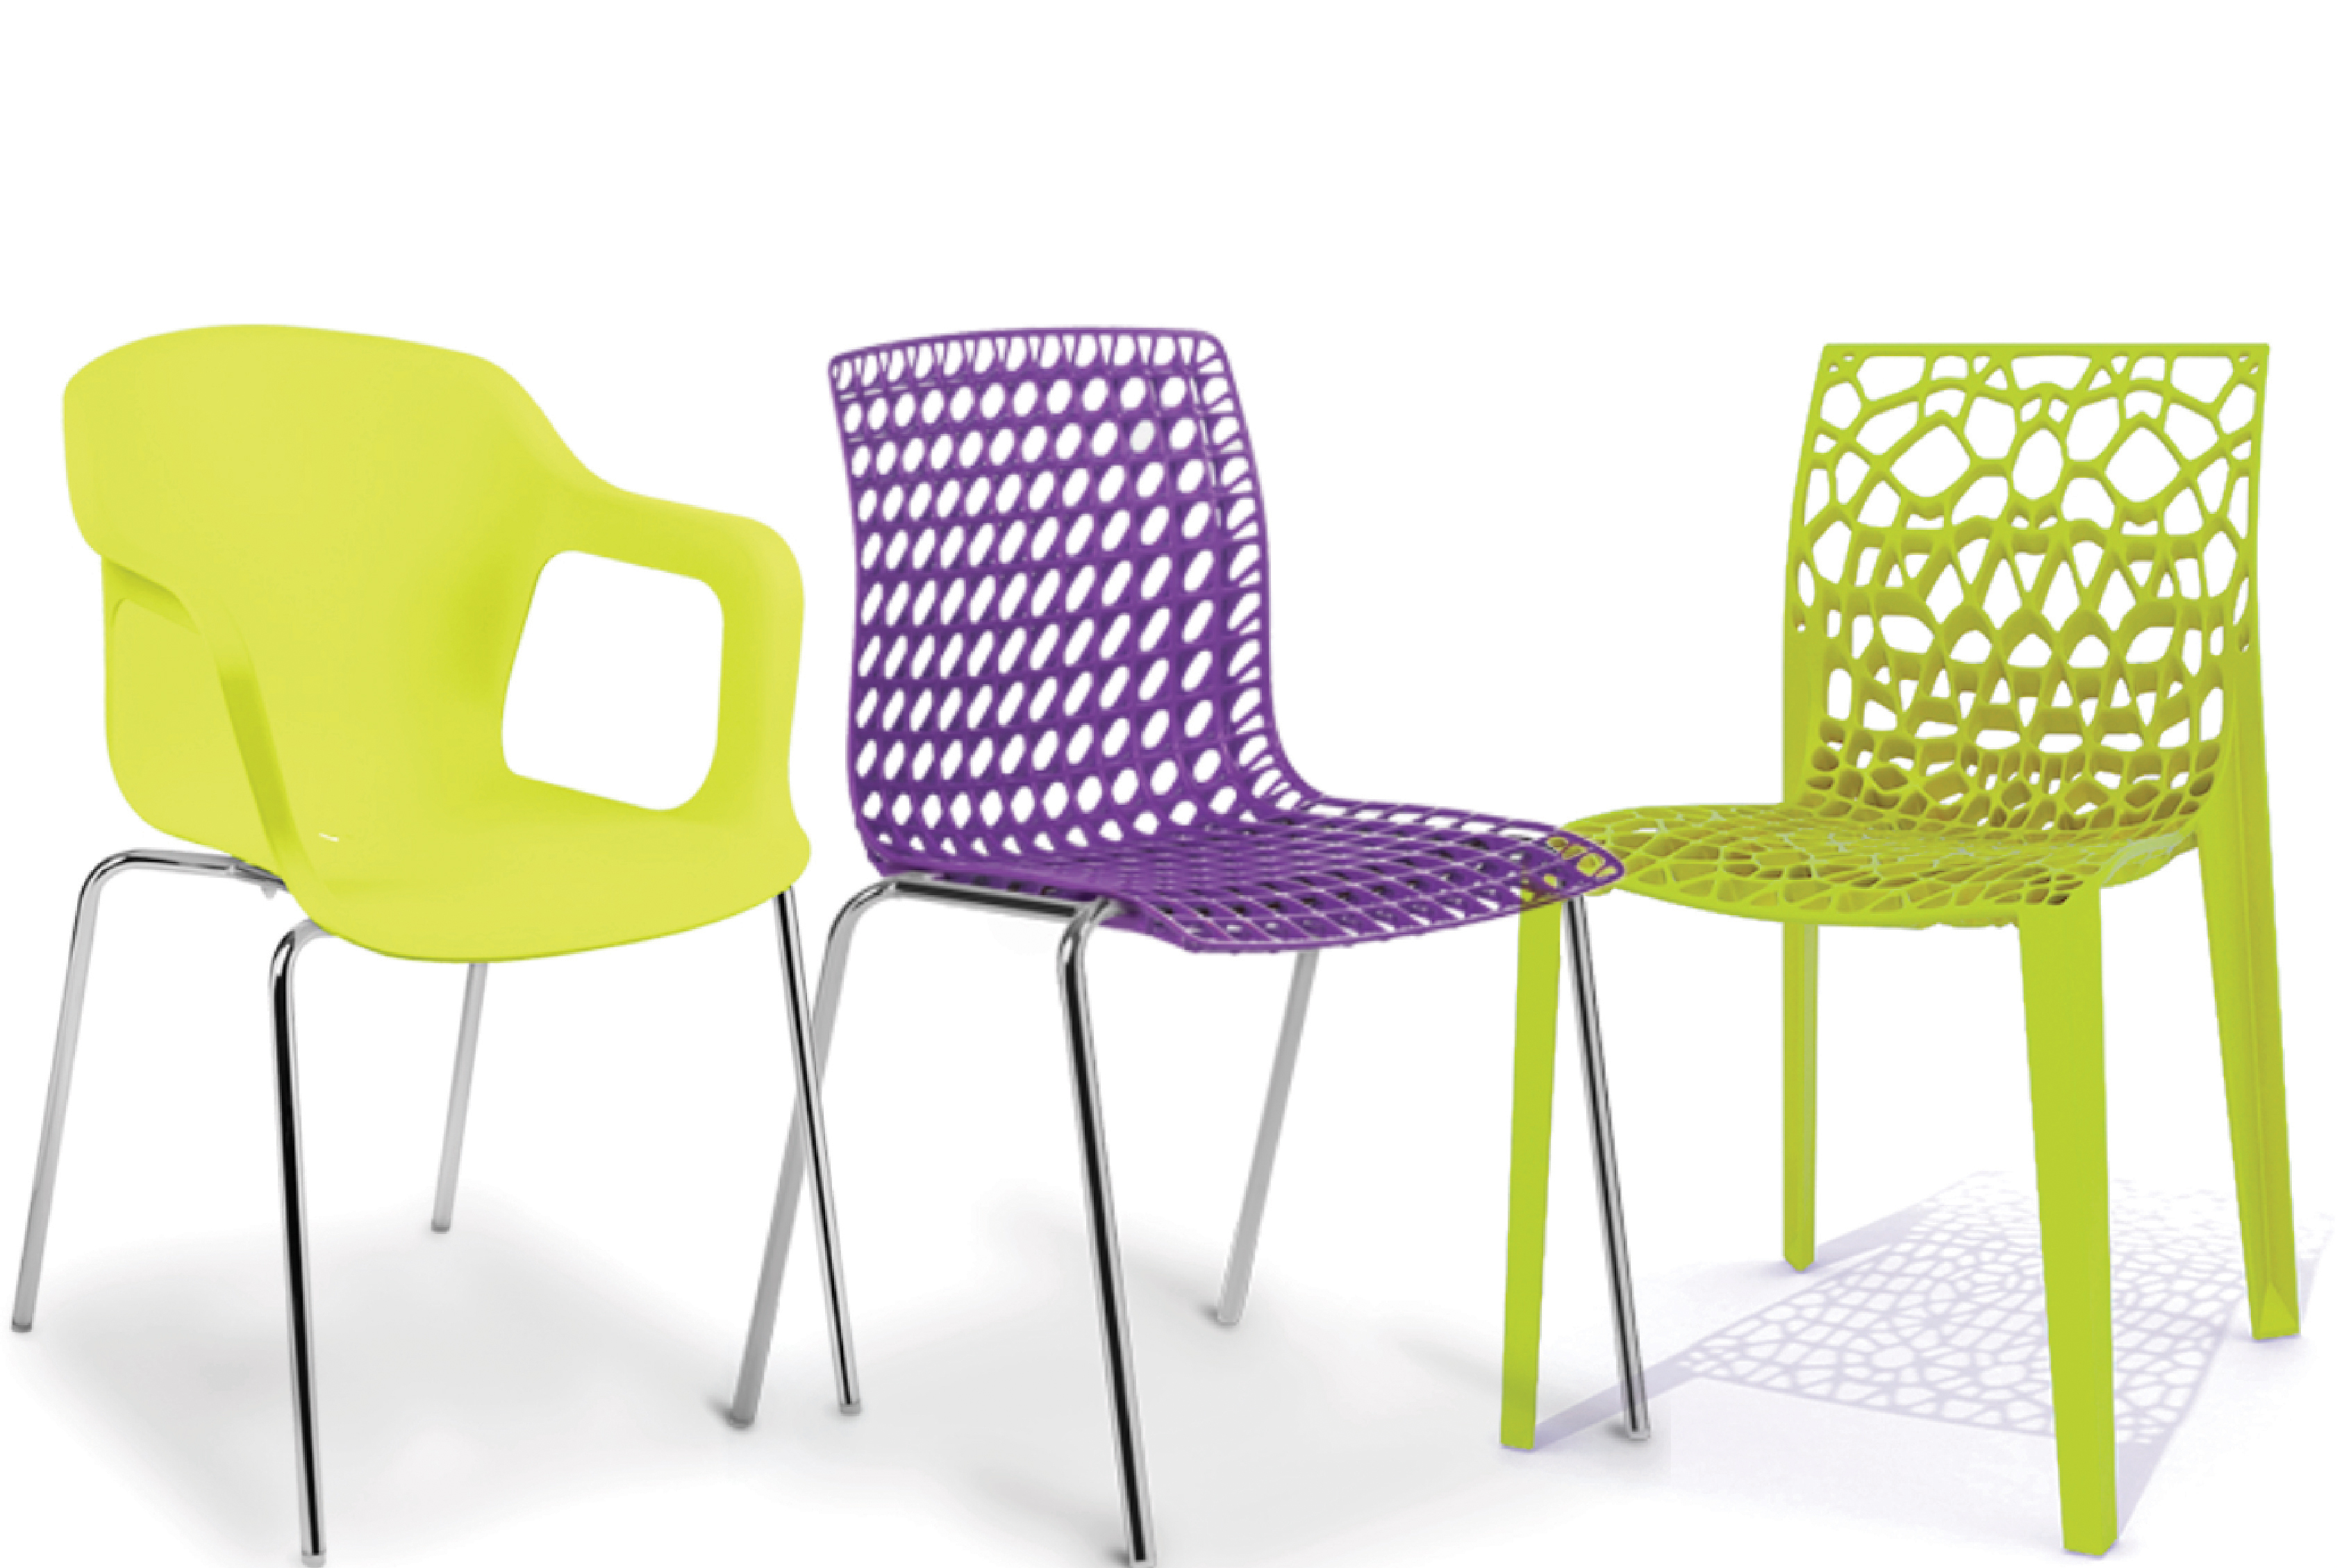 Guia de tendências ColorForward publicado pela Clariant inspira nova linha de cadeiras do cliente ...